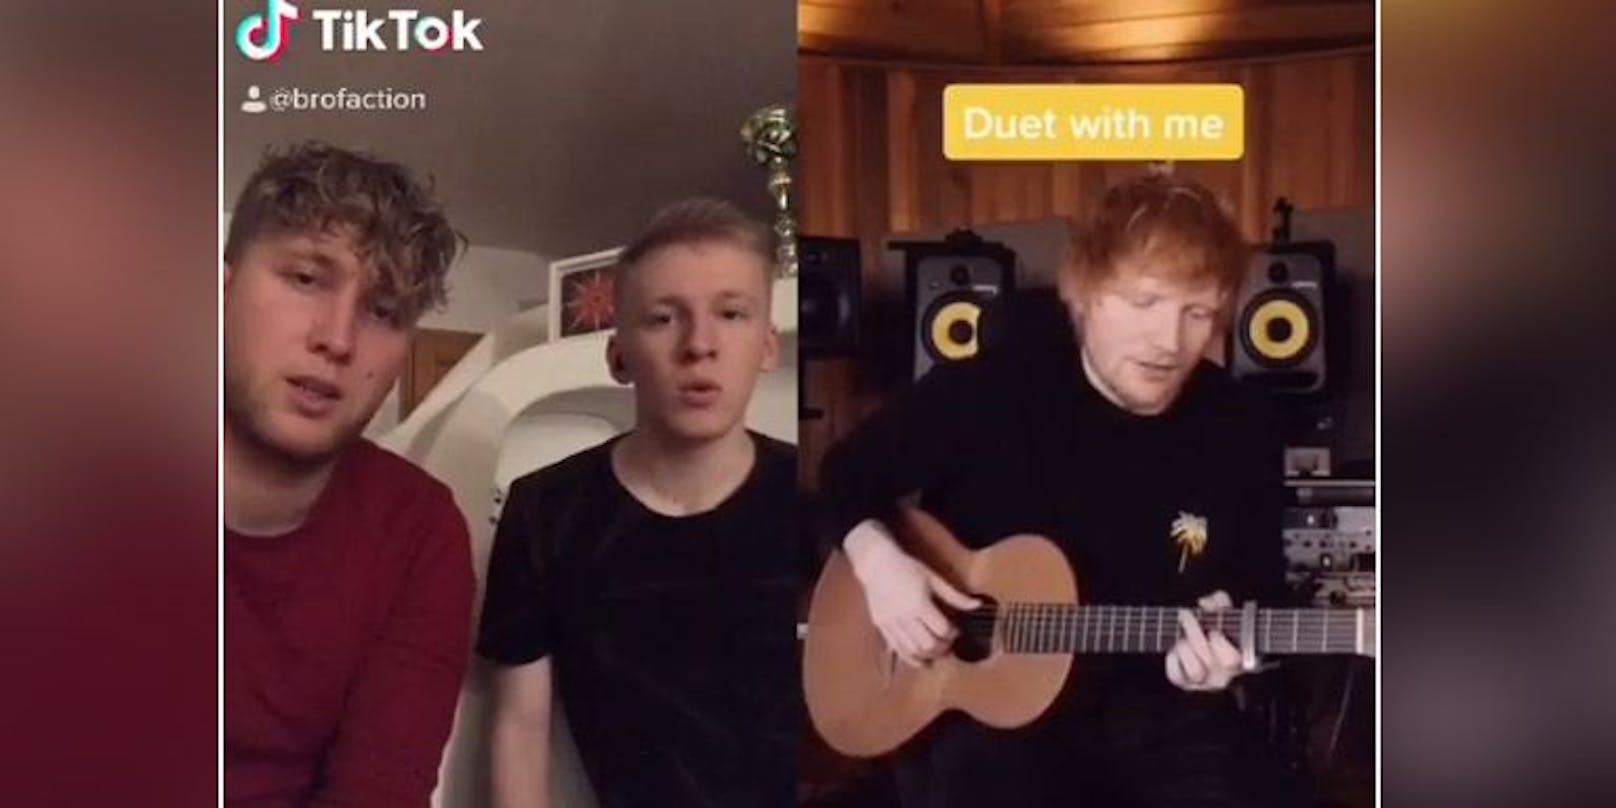 Brofaction "sangen" mit Ed Sheeran und er teilte das Video in seiner Story